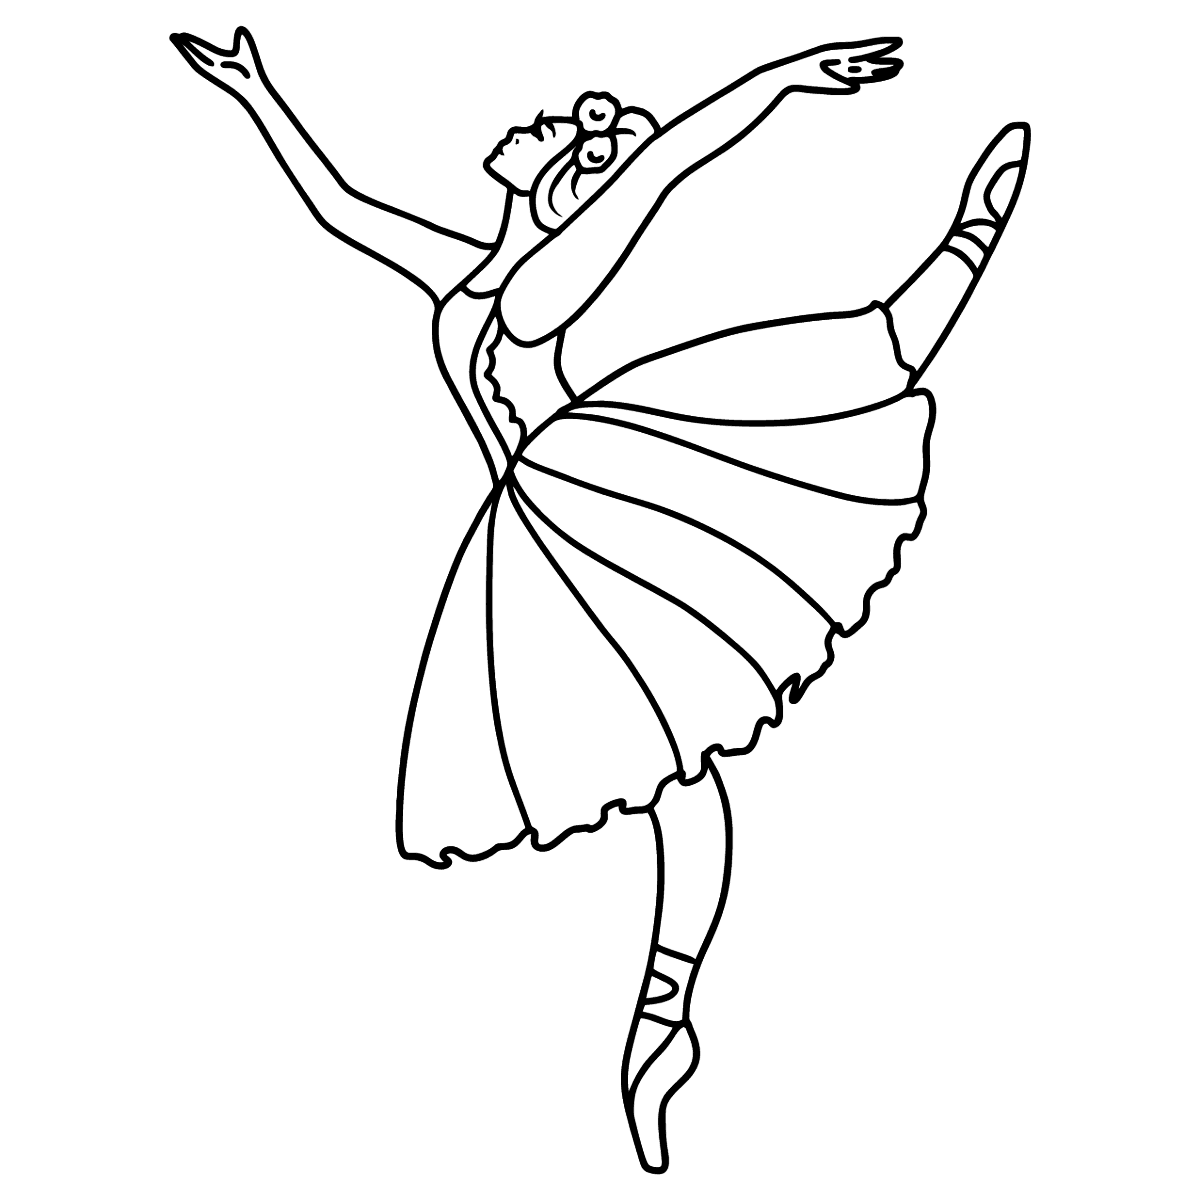 Раскраска балерина Фелис